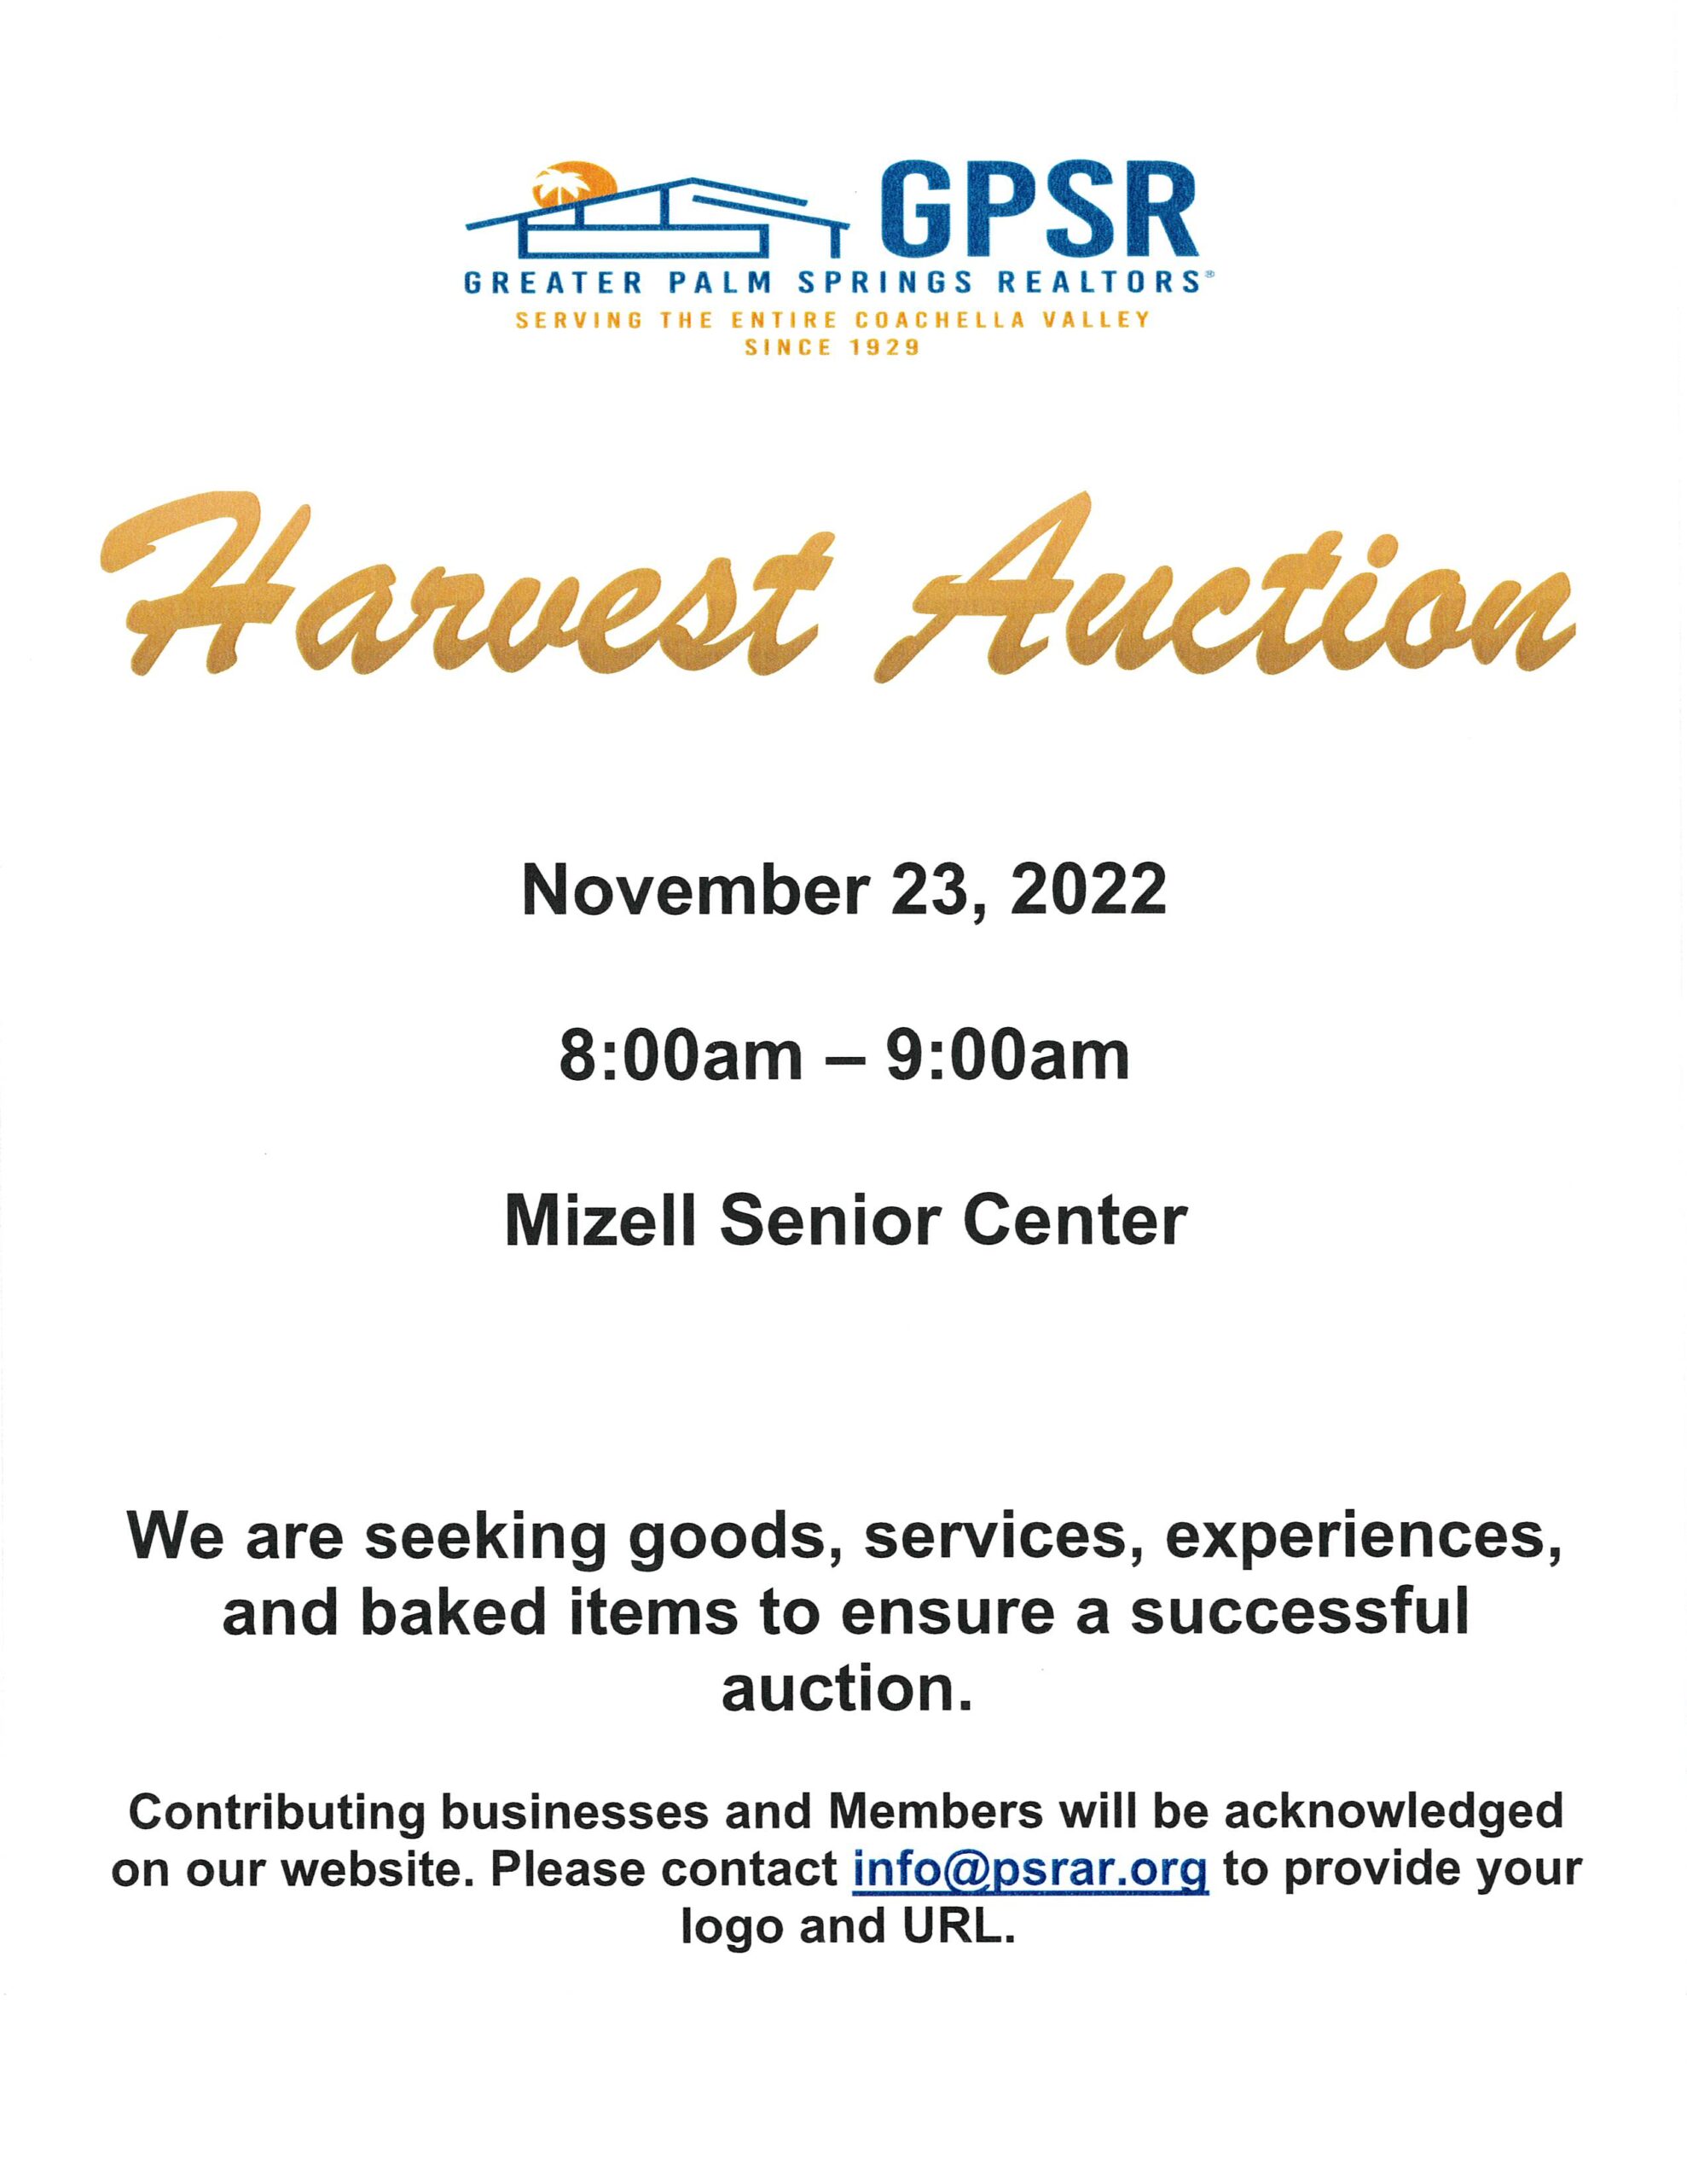 Harvest Auction